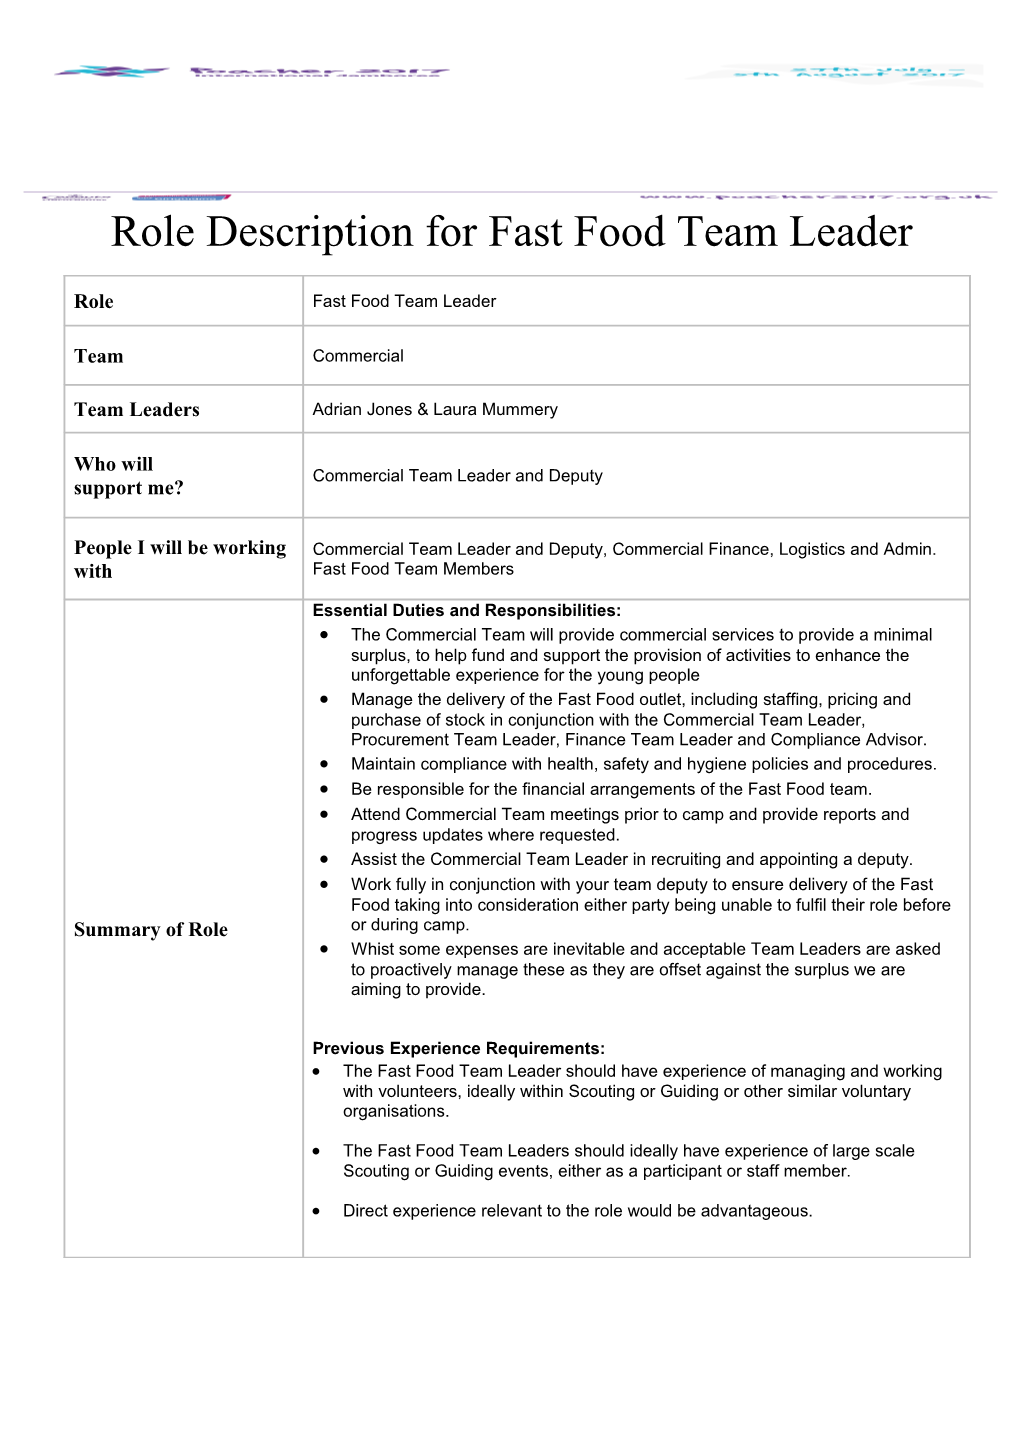 Role Description for Fast Food Team Leader